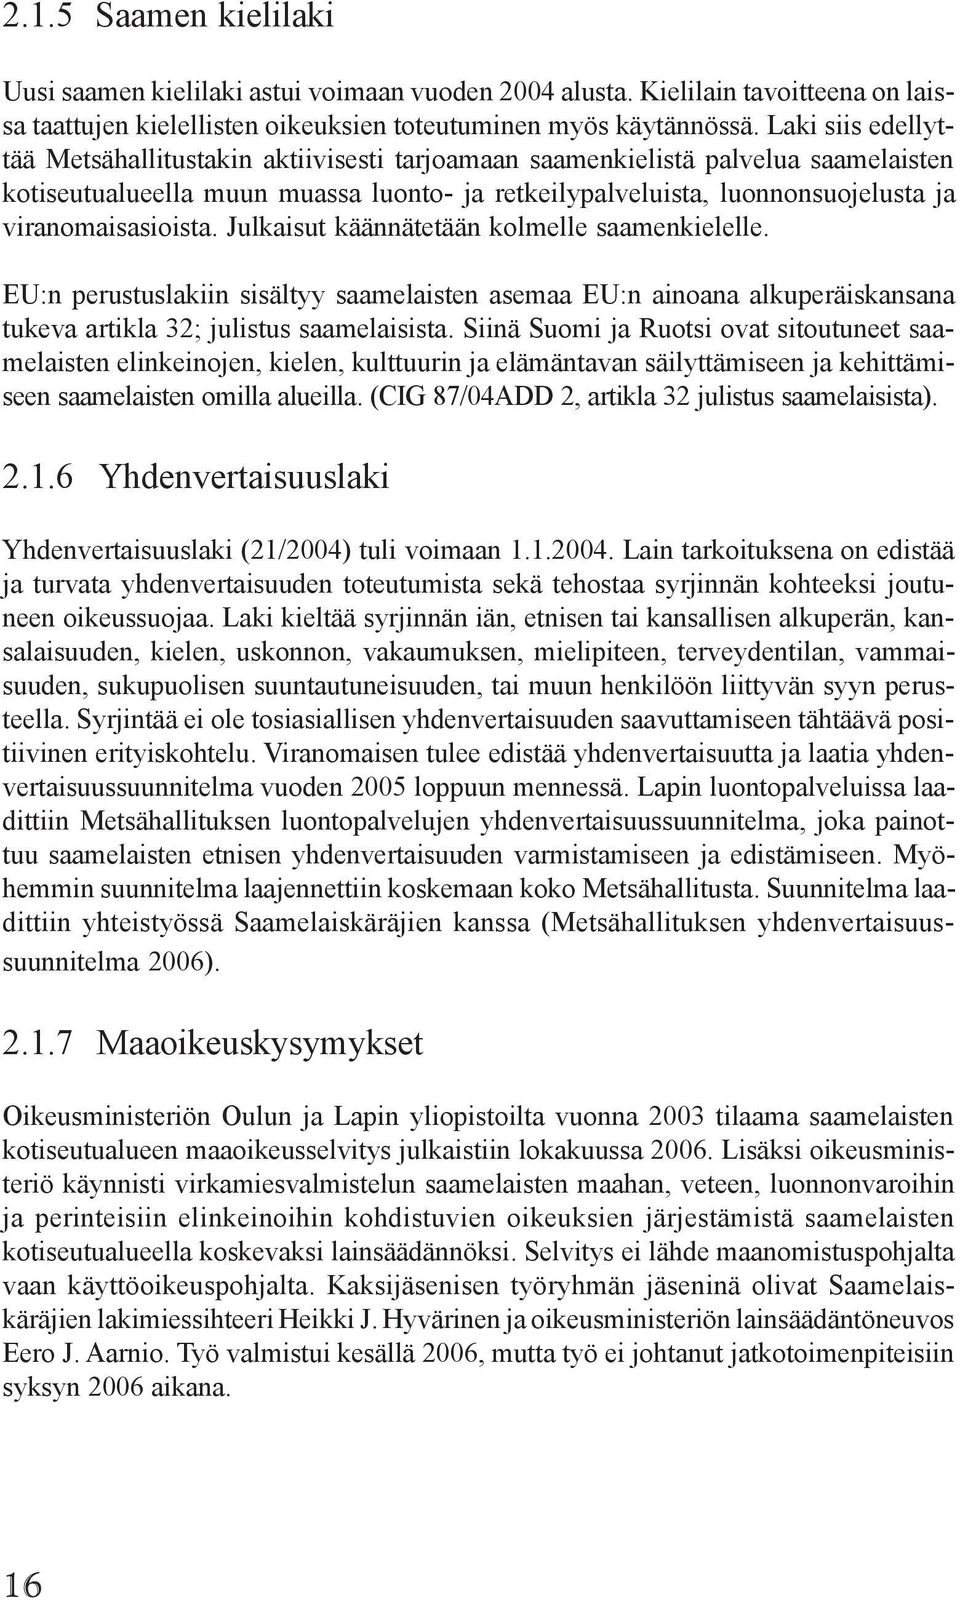 viranomaisasioista. Julkaisut käännätetään kolmelle saamenkielelle. EU:n perustuslakiin sisältyy saamelaisten asemaa EU:n ainoana alkuperäiskansana tukeva artikla 32; julistus saamelaisista.